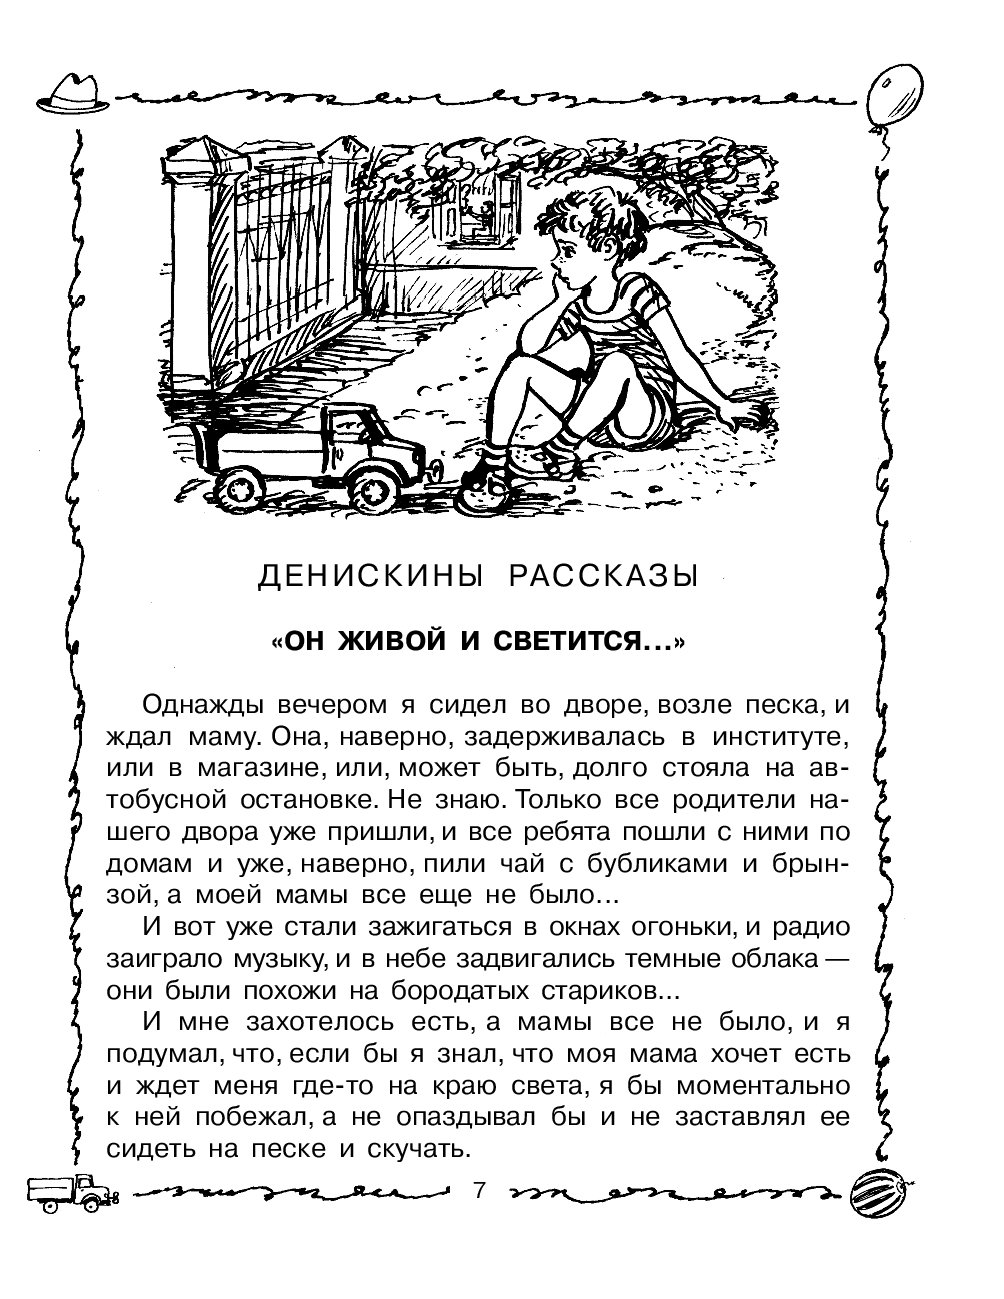 Иллюстрации к книге Драгунского Денискины рассказы